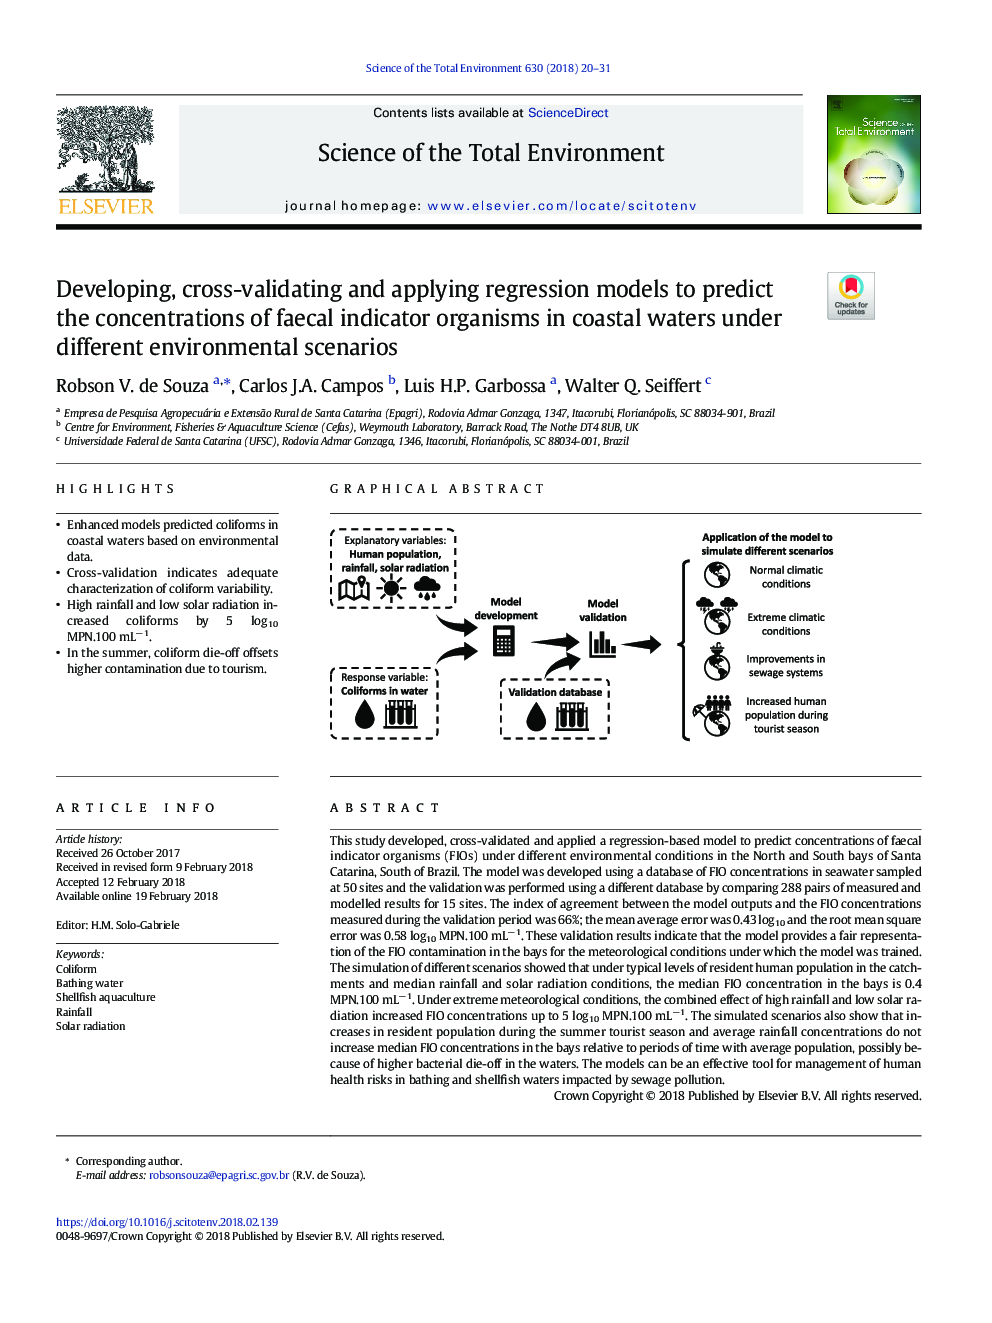 توسعه، اعتبارسنجی و استفاده از مدل های رگرسیون برای پیش بینی غلظت ارگانیسم های شاخص مدفوع در آب های ساحلی تحت سناریوهای مختلف محیطی 